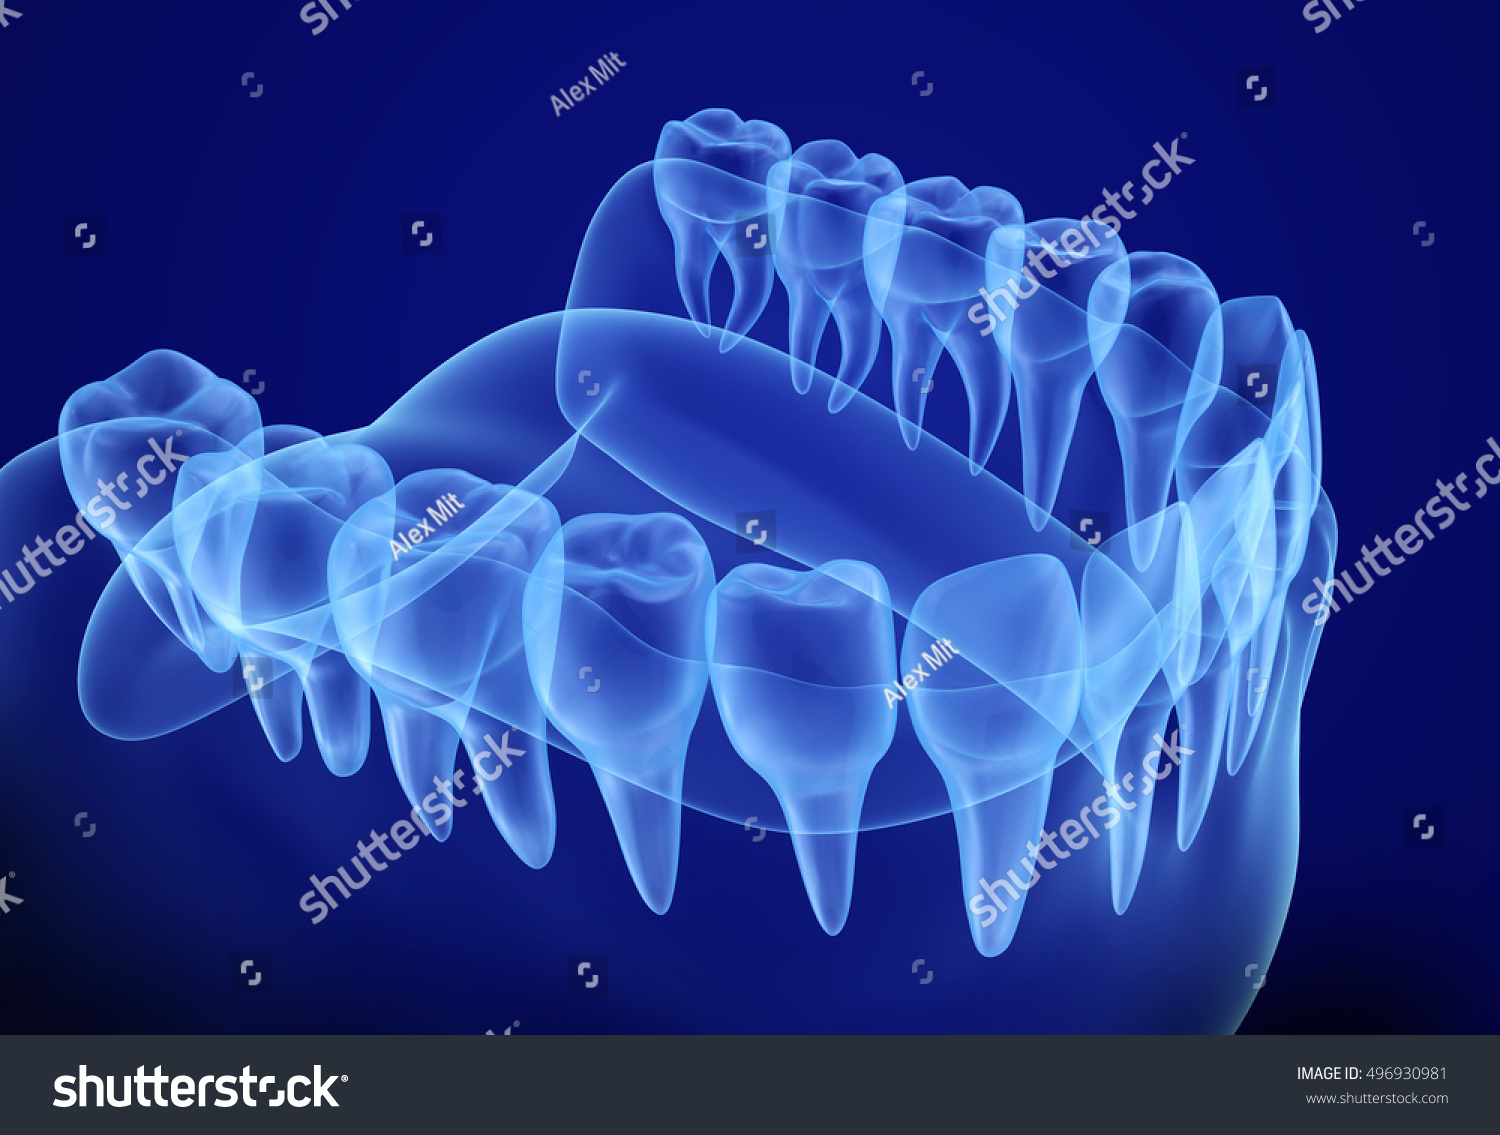 Зд зуб. Зуб 3д. Красивые рентгеновские снимки зубов.